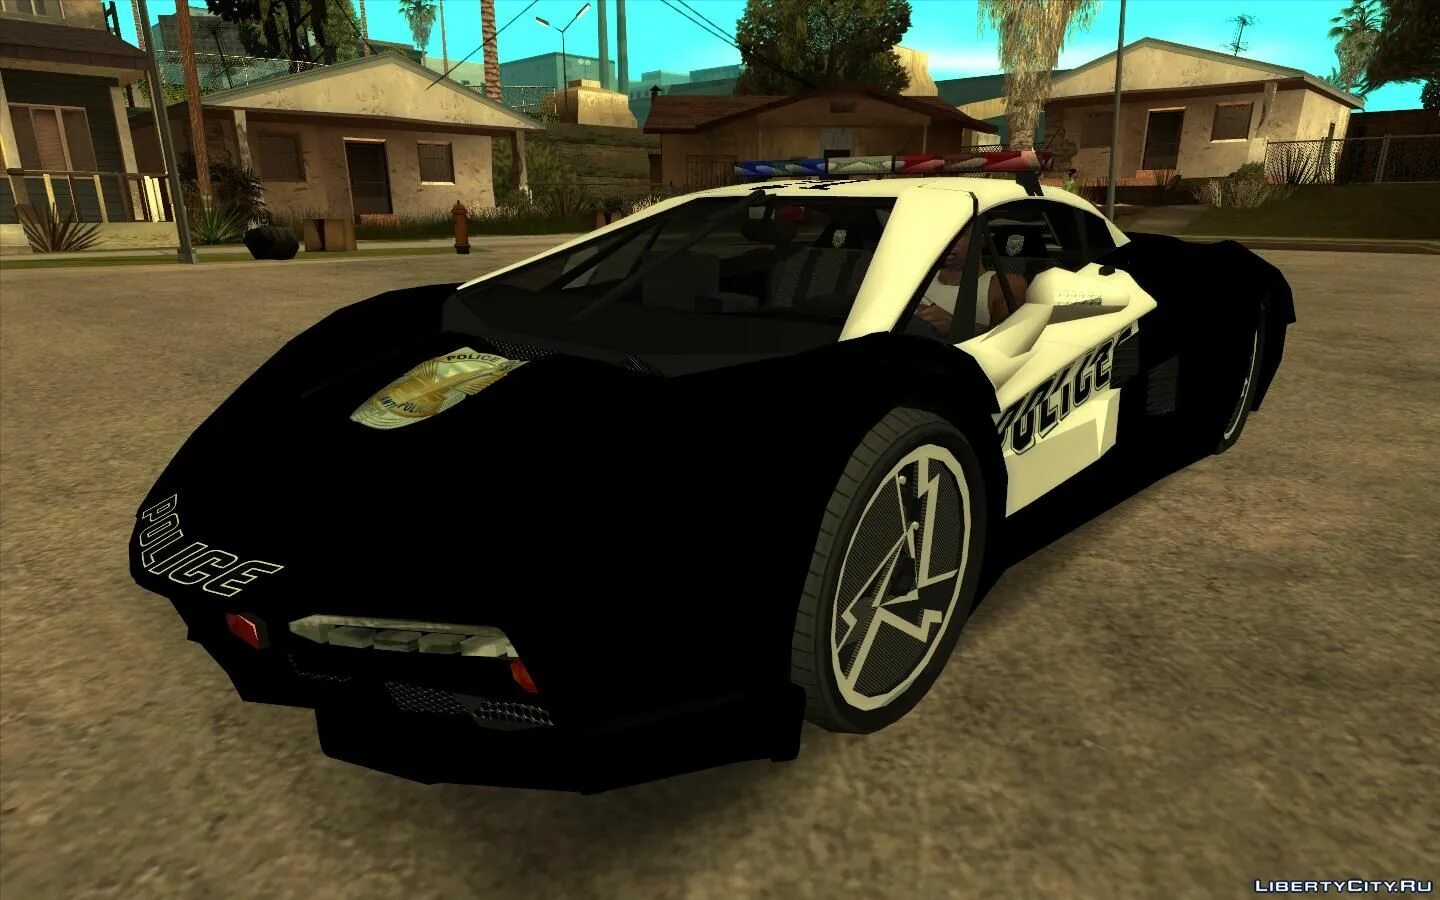 Полицейская машина GTA sa. GTA sa для GTA 5 машины мод. ГТА 5 машины в стиле ГТА Сан. GTA San Andreas полиция. Быстрые машины в гта сан андреас